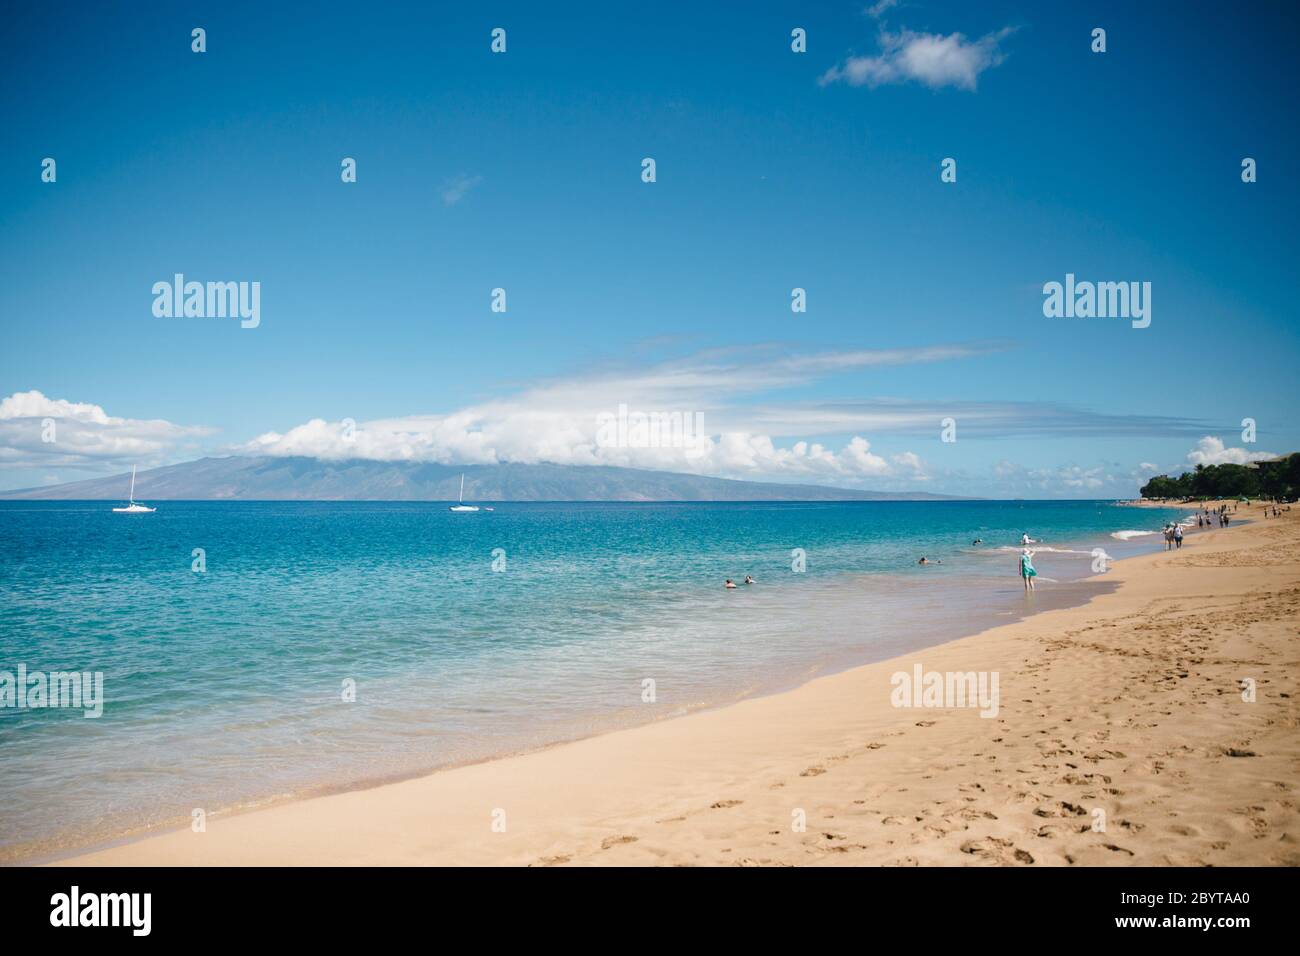 Eaux bleues claires de la plage de Kaanapali sur l'île de Maui, Hawaï pendant la journée avec une seule personne marchant Banque D'Images